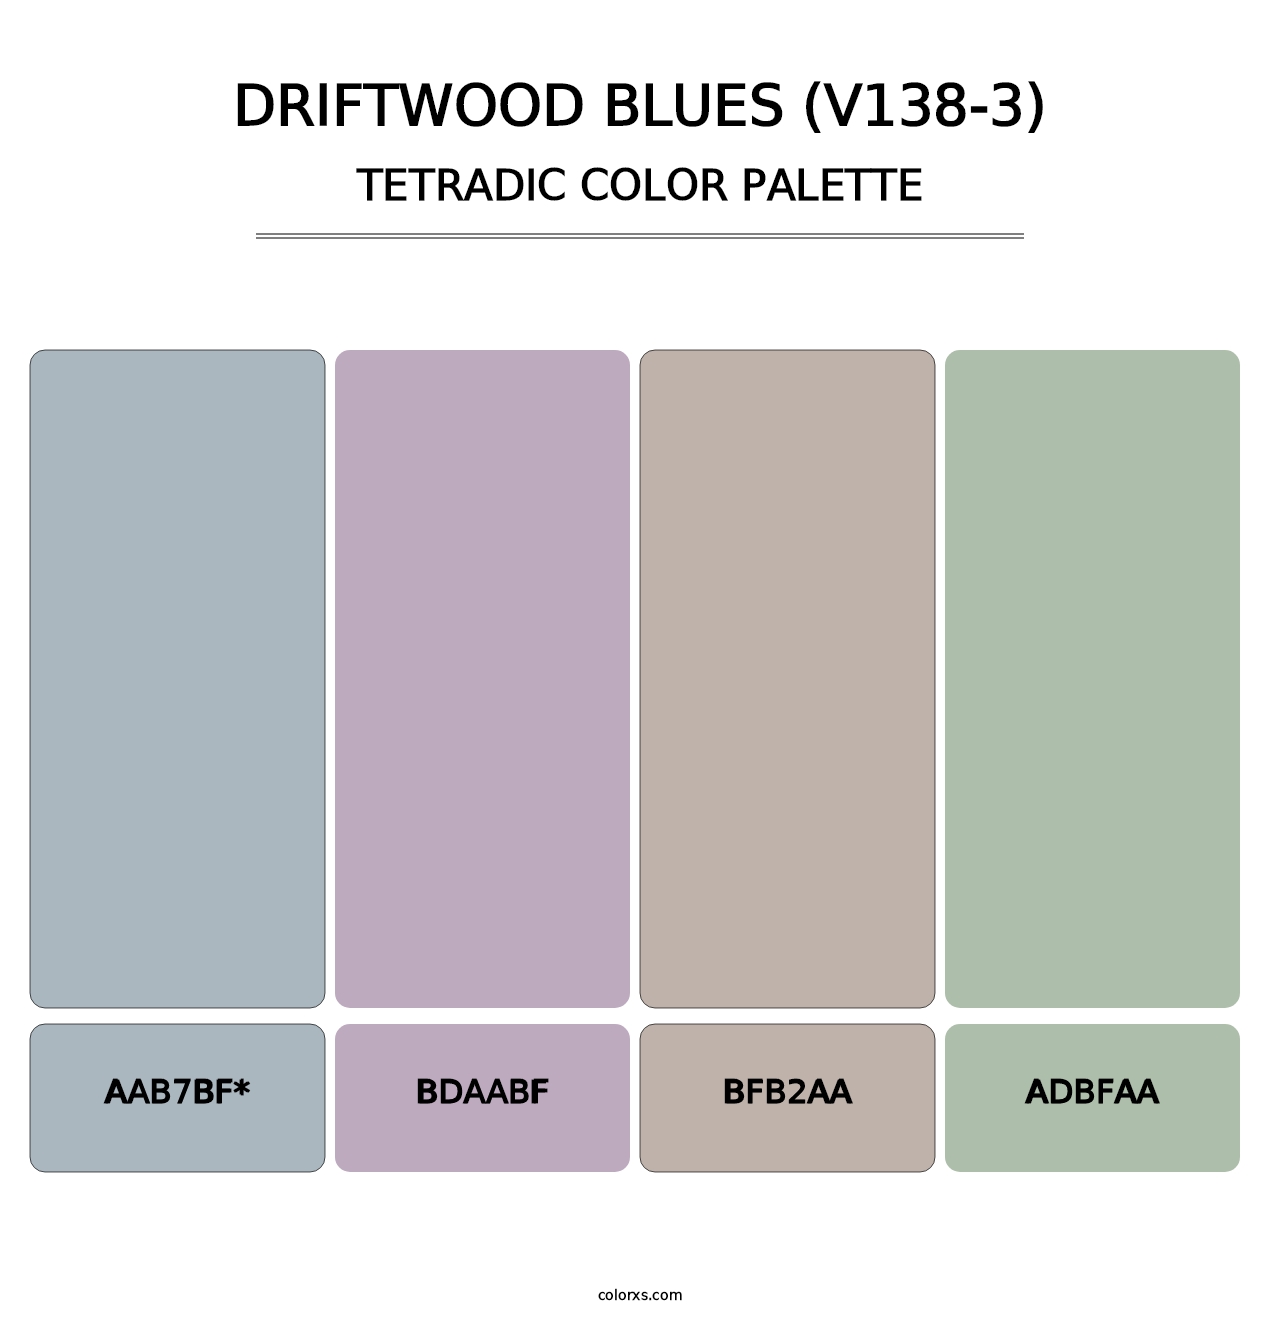 Driftwood Blues (V138-3) - Tetradic Color Palette